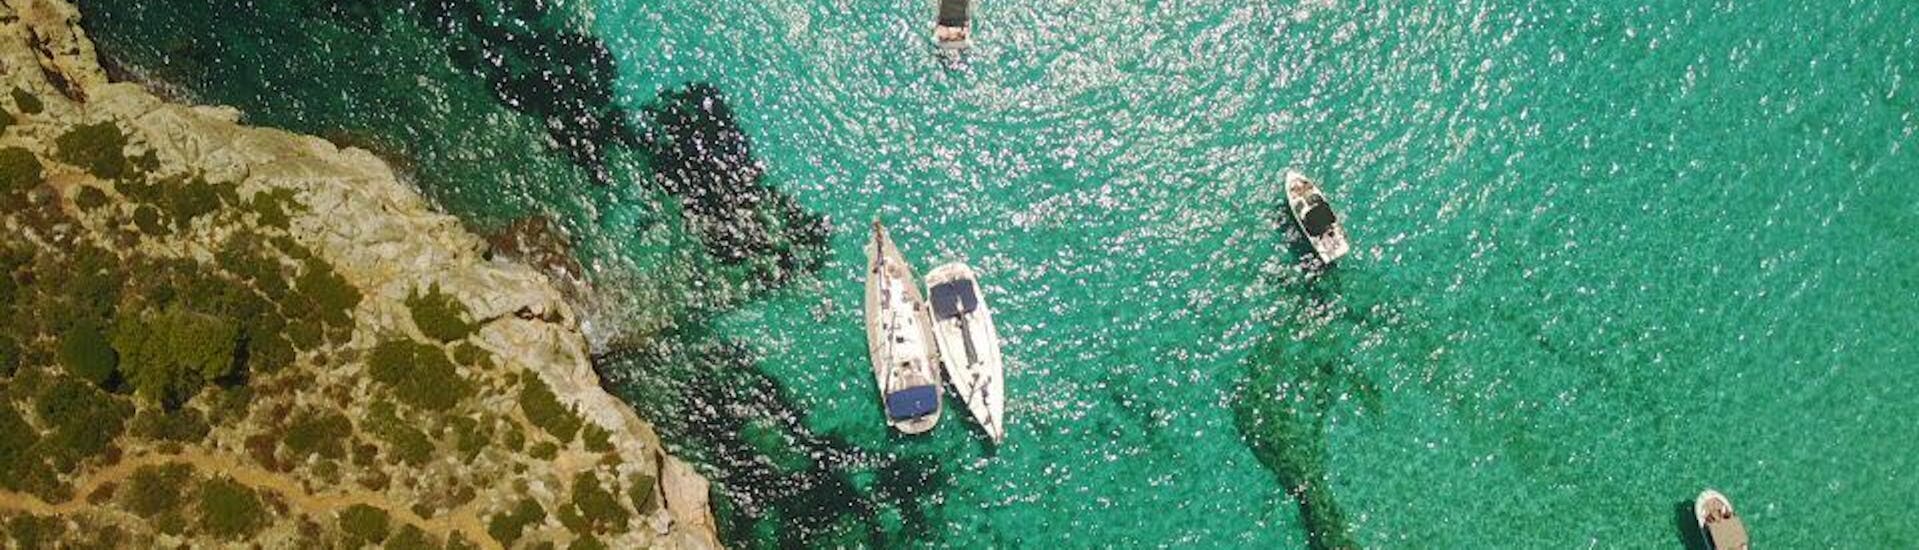 Gita in barca a vela da Portocolom a Cala Varques con bagno in mare e visita turistica.